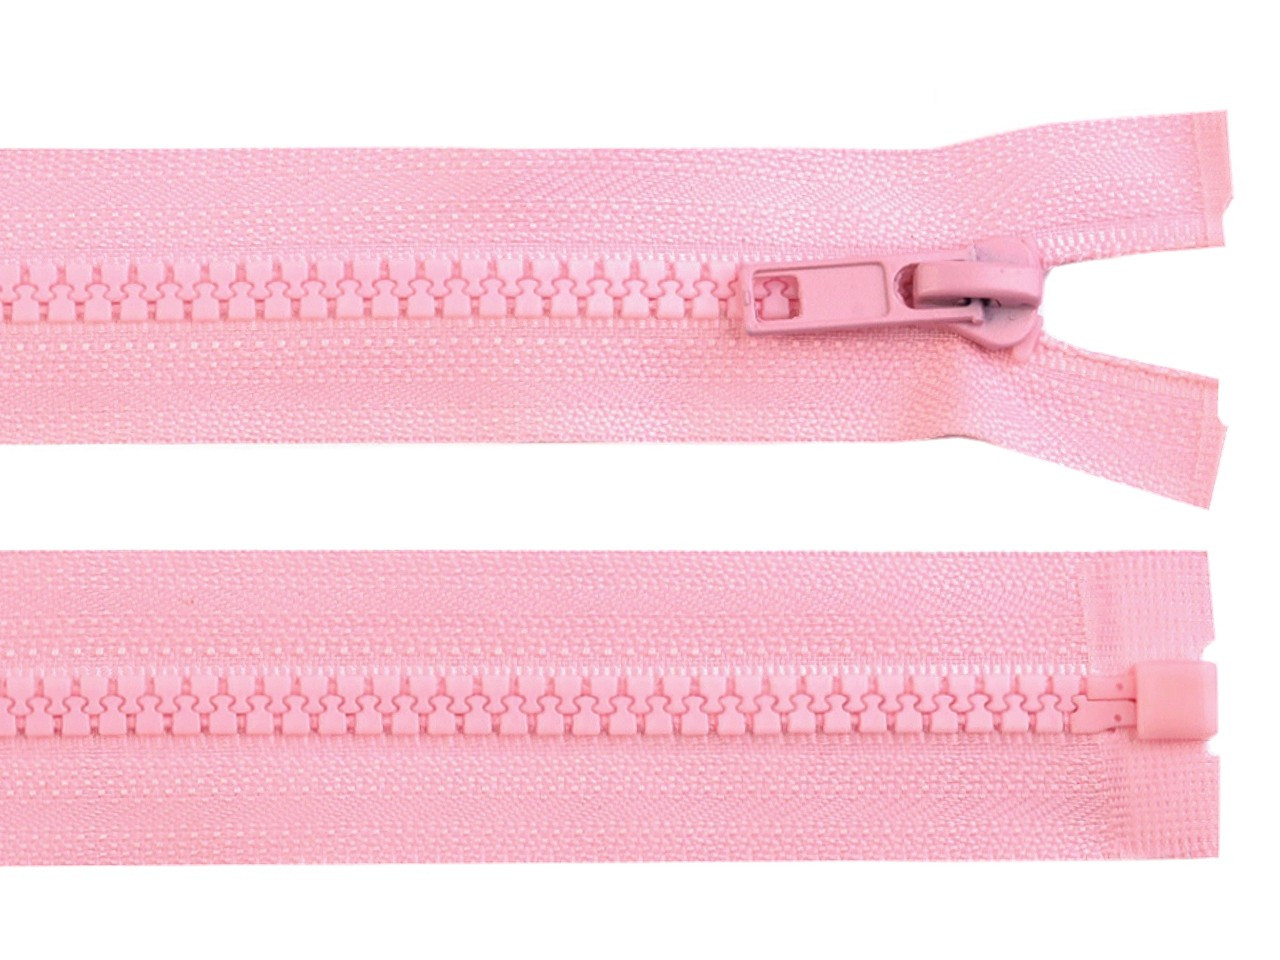 Kostěný zip No 5 délka 50 cm bundový, barva 134 růžová dětská světlá